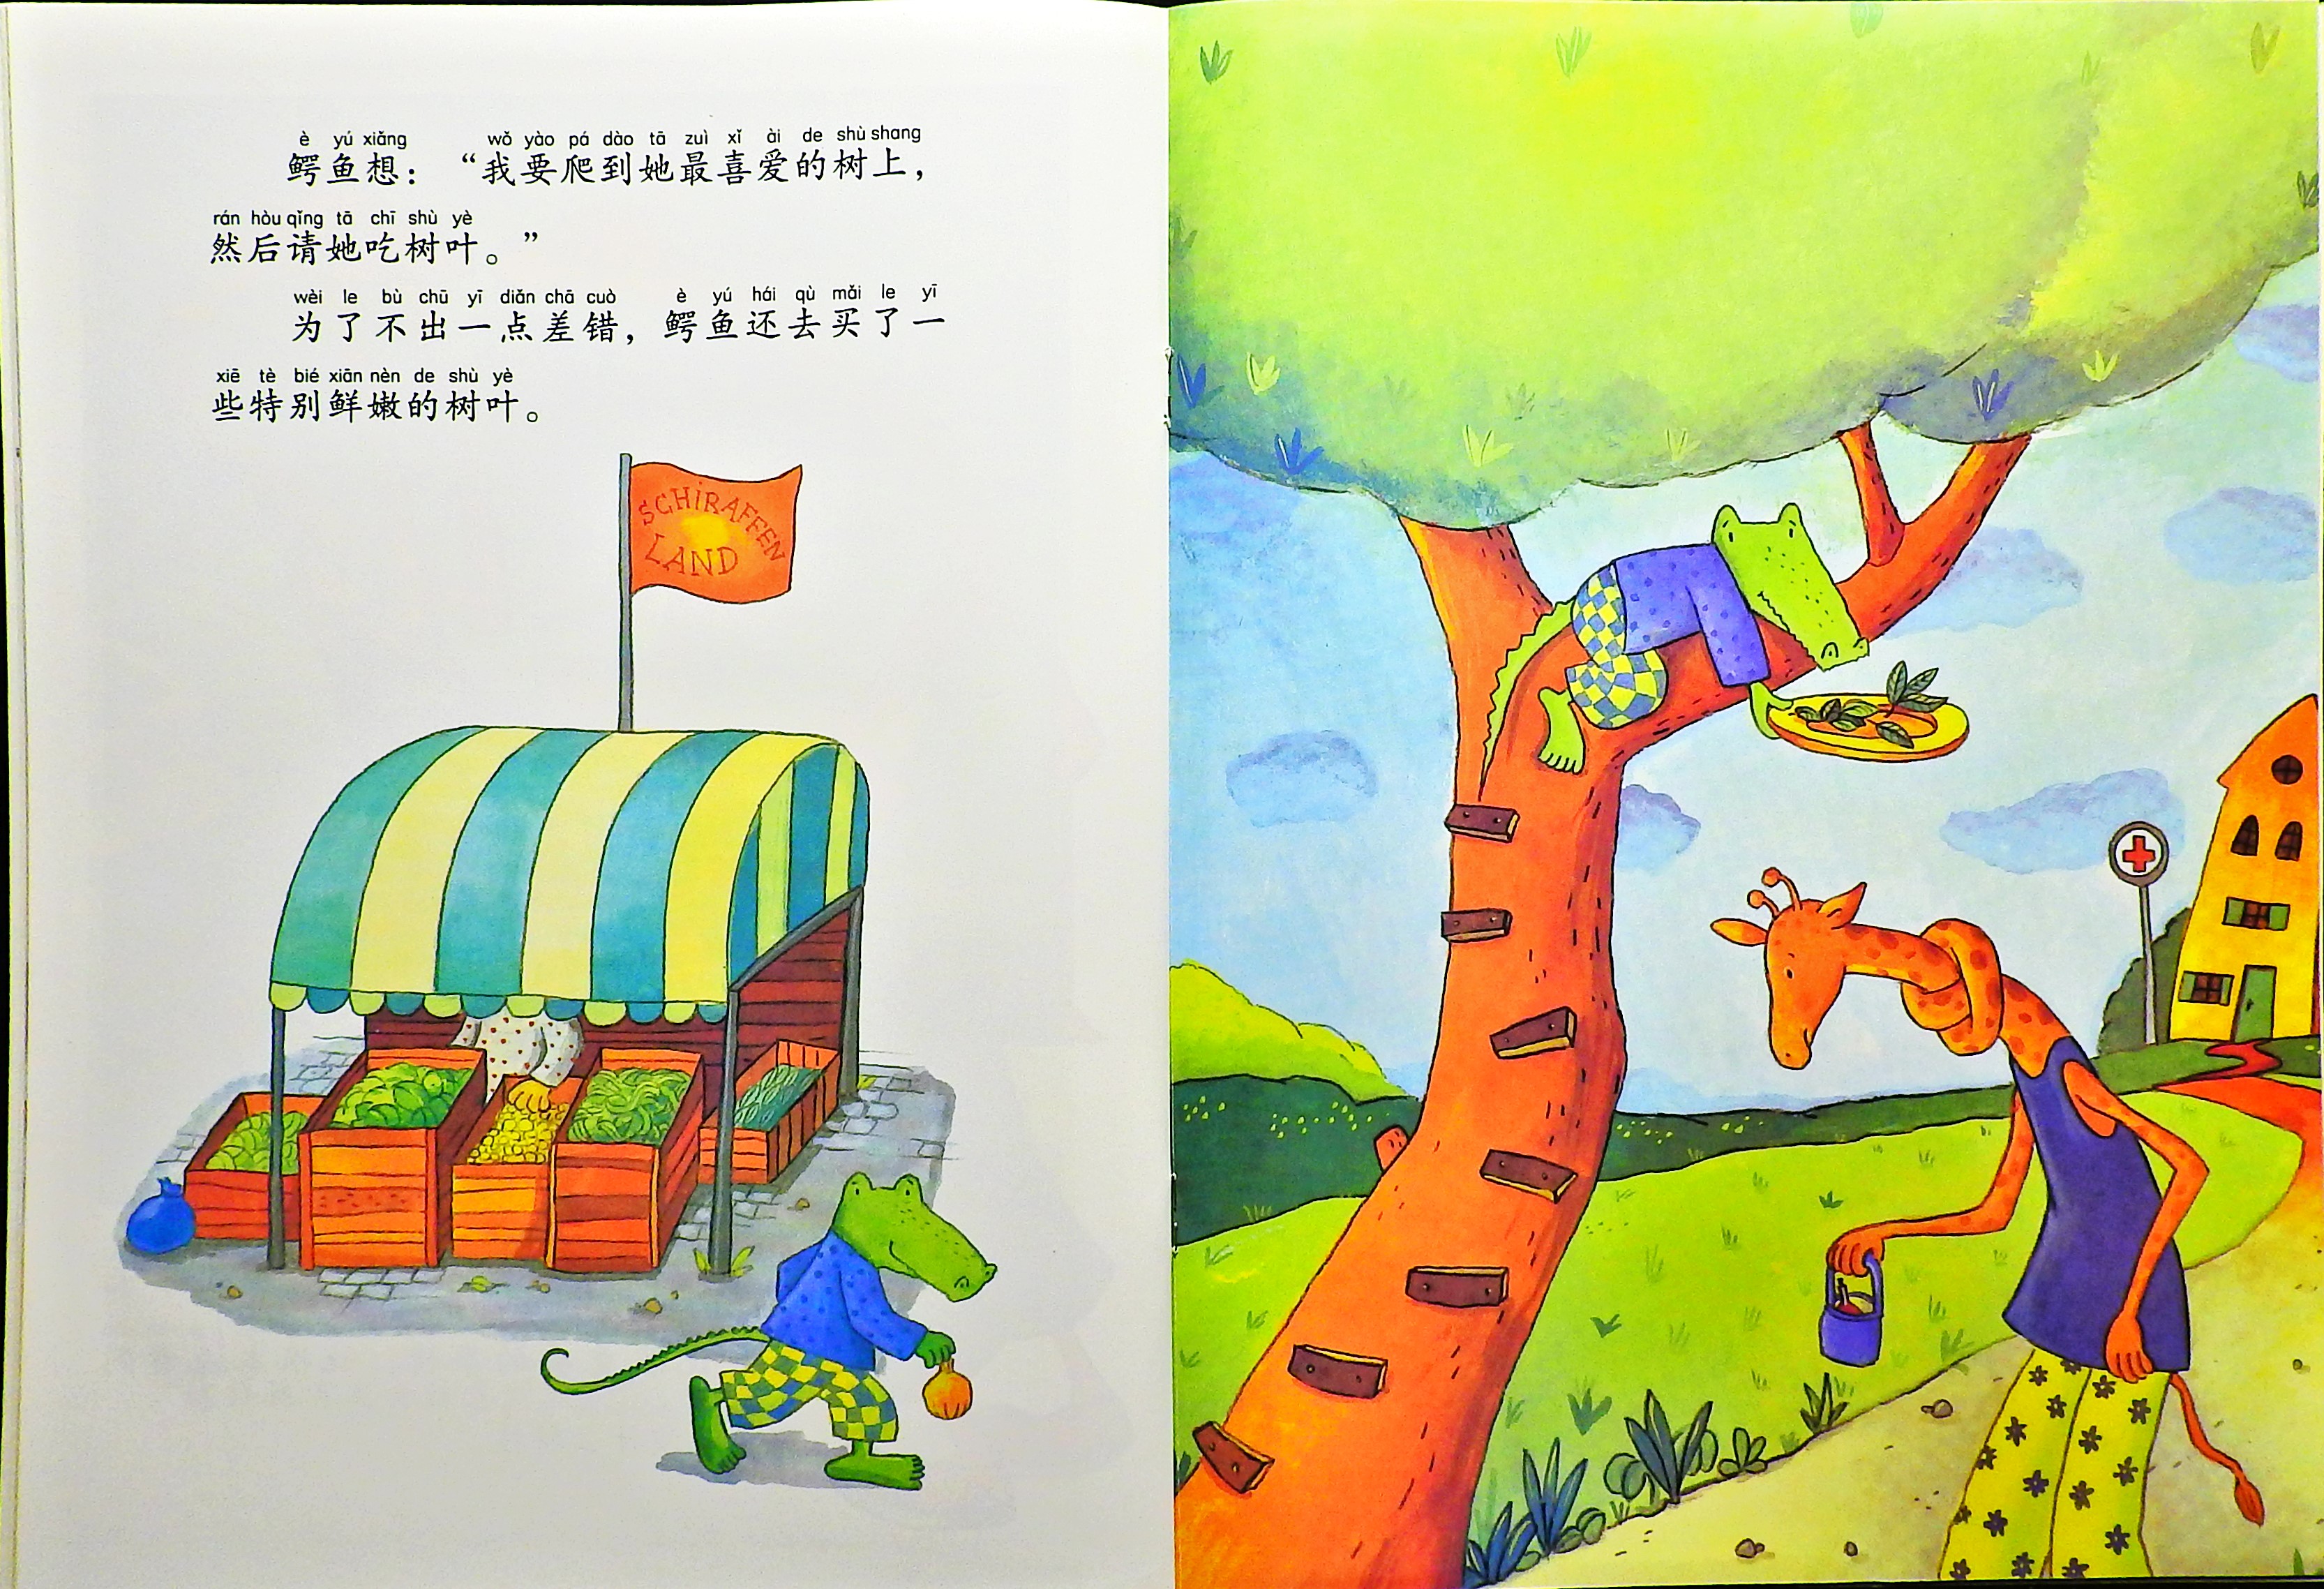 鳄鱼爱上长颈鹿 (10),绘本,绘本故事,绘本阅读,故事书,童书,图画书,课外阅读